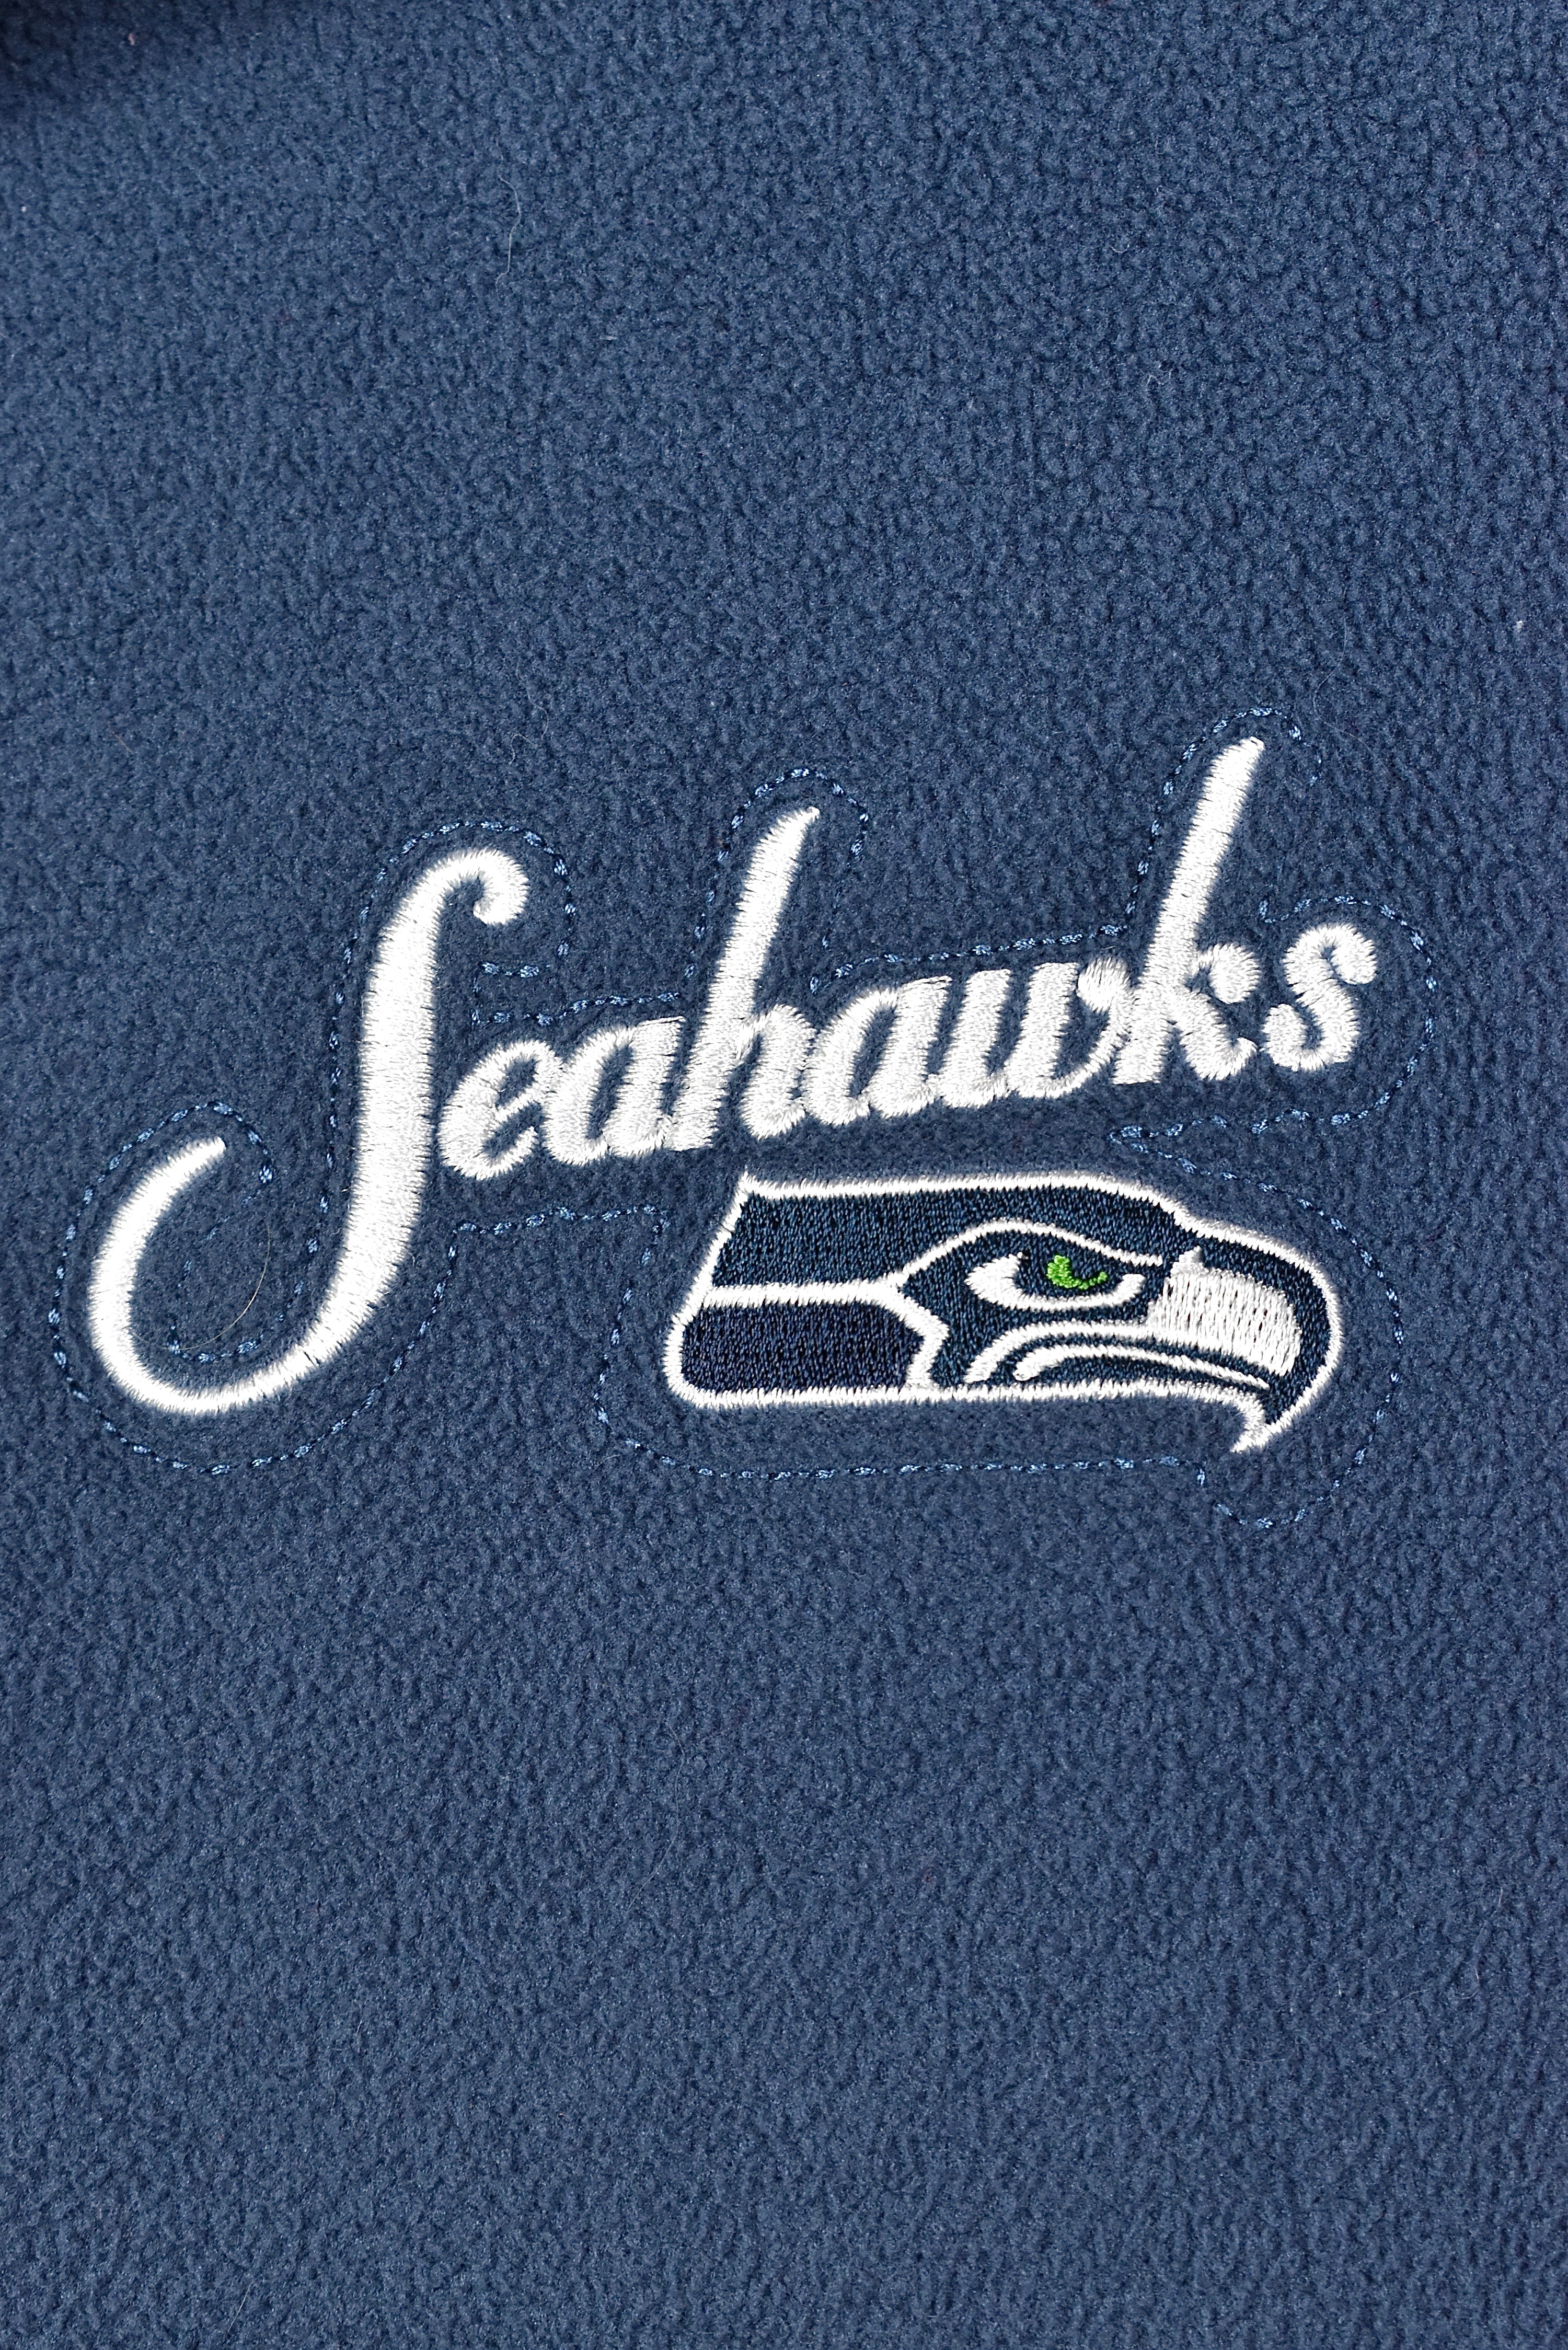 VINTAGE WOMEN'S NFL SEATTLE SEAHAWKS FLEECE 1/4 ZIP SWEATSHIRT | MEDIUM PRO SPORT